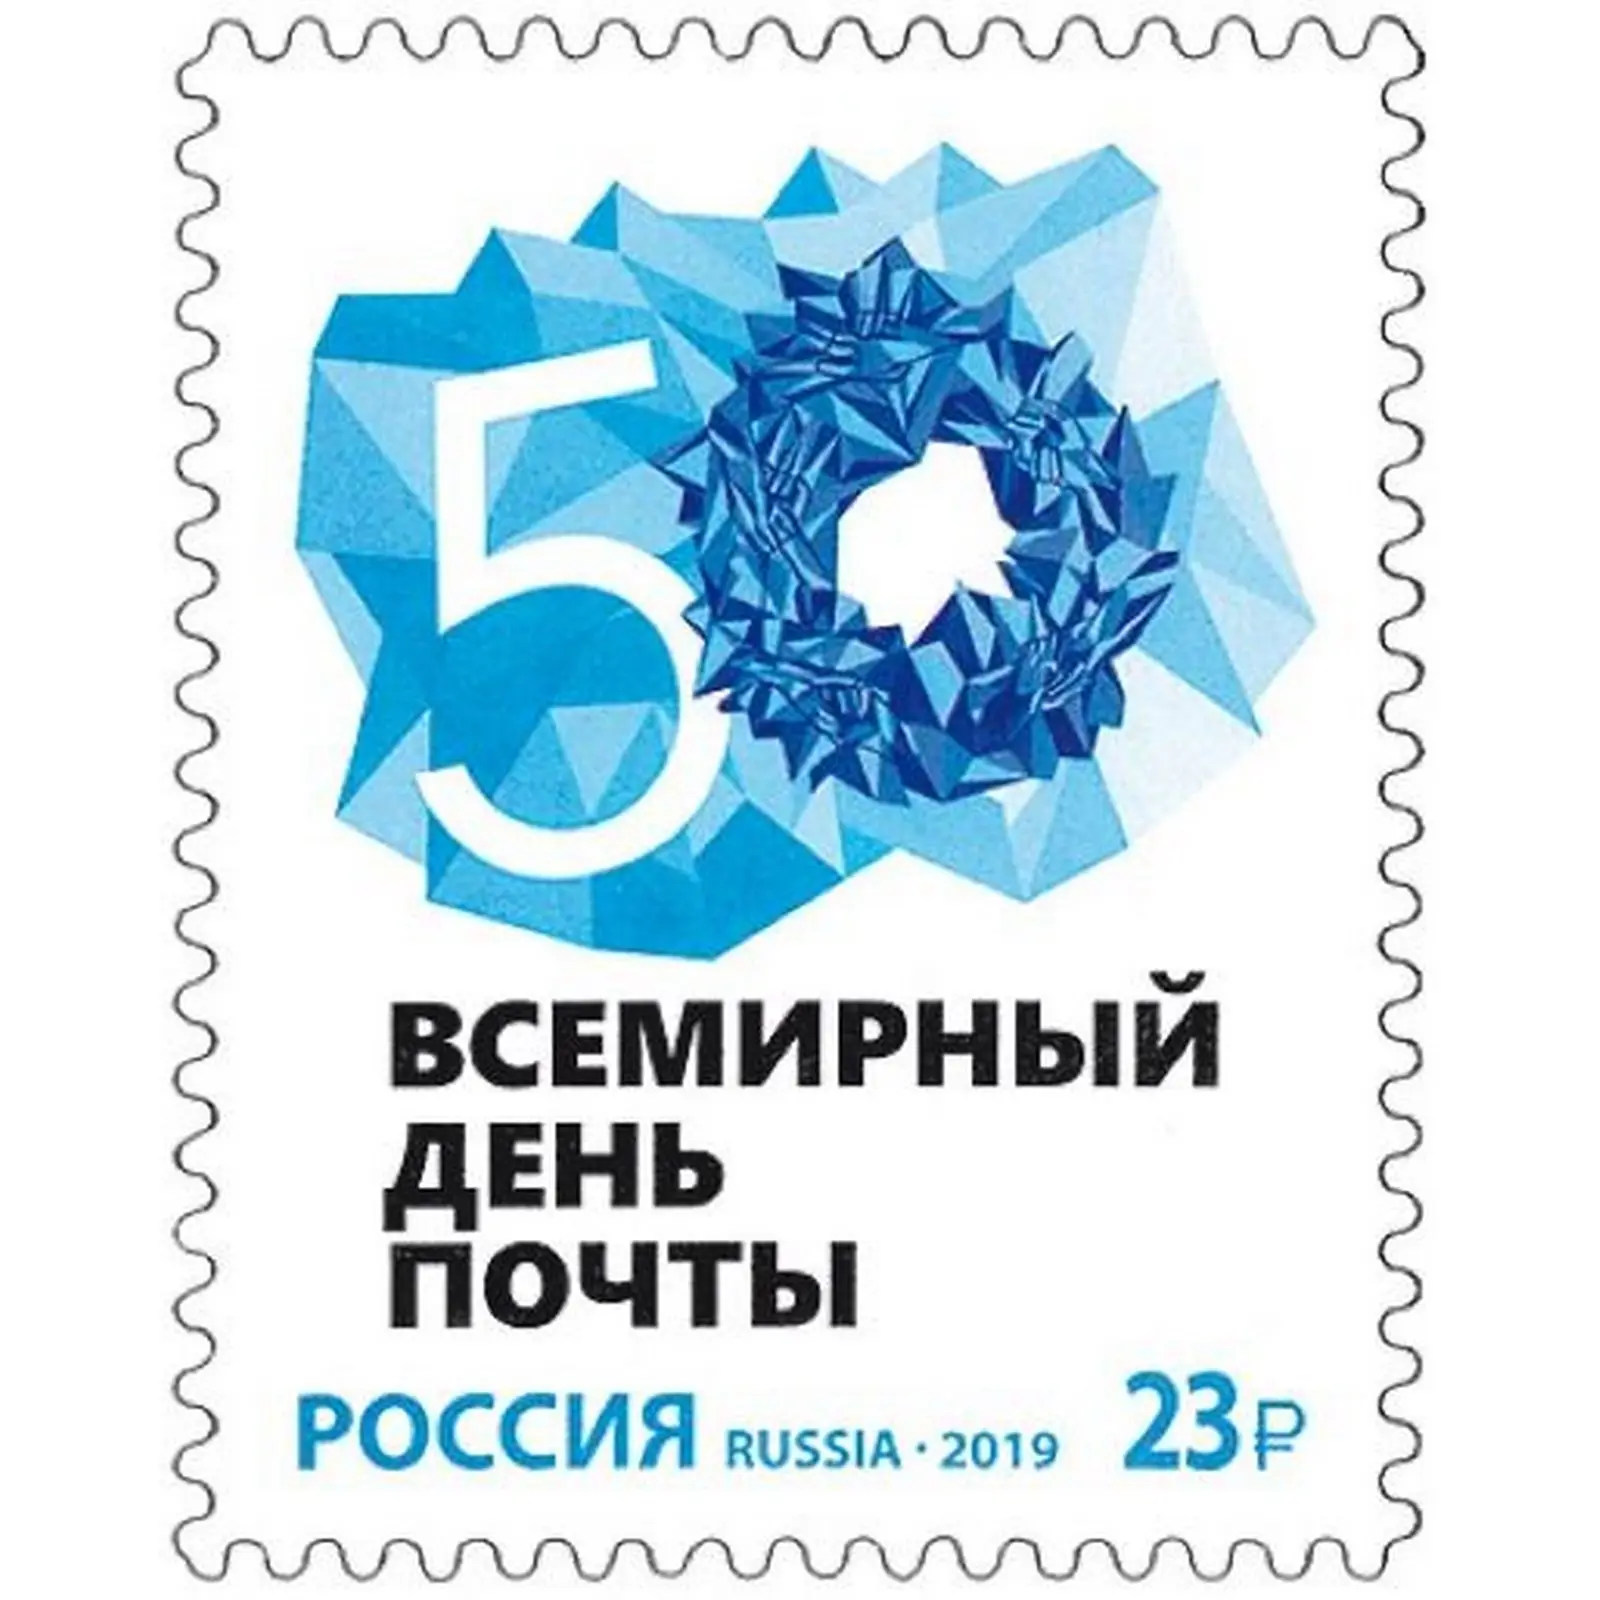 23 posting. Всемирный день почты. Всемирный день почты (World Post Day)148 лет. Почтовая марка за 23 рубля.